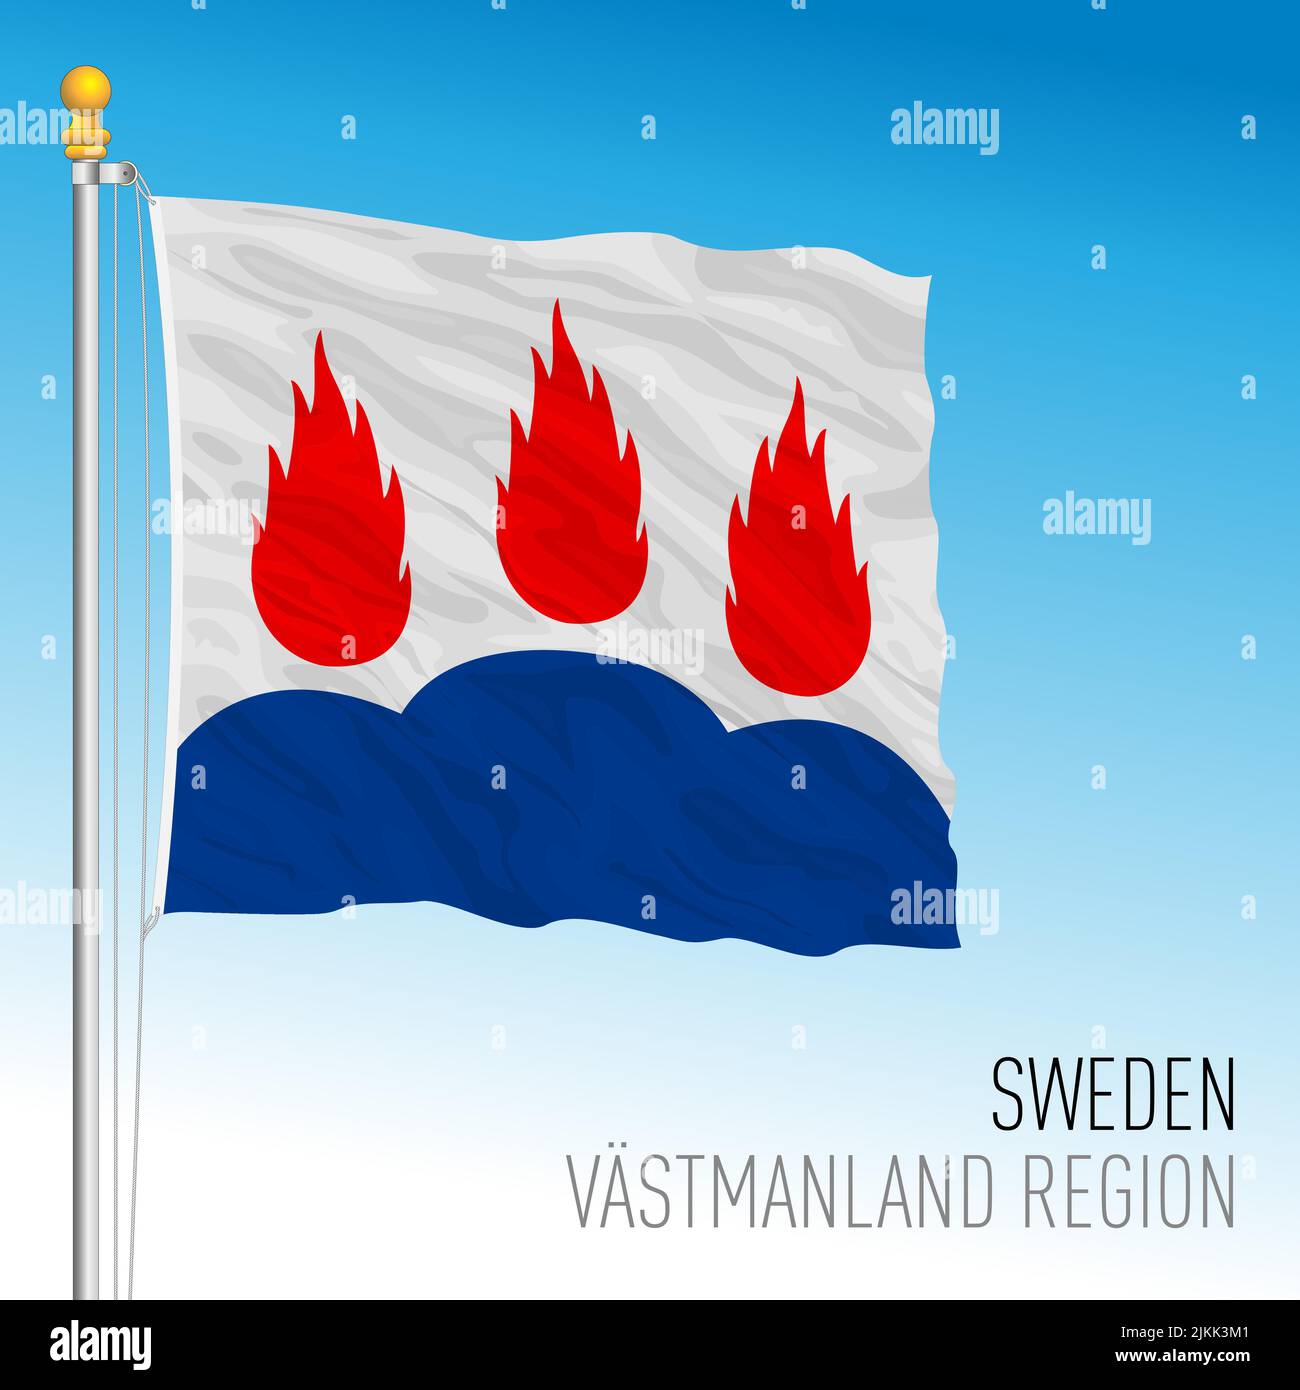 Bandera regional del condado de Vastmanland, Reino de Suecia, ilustración de vectores Ilustración del Vector